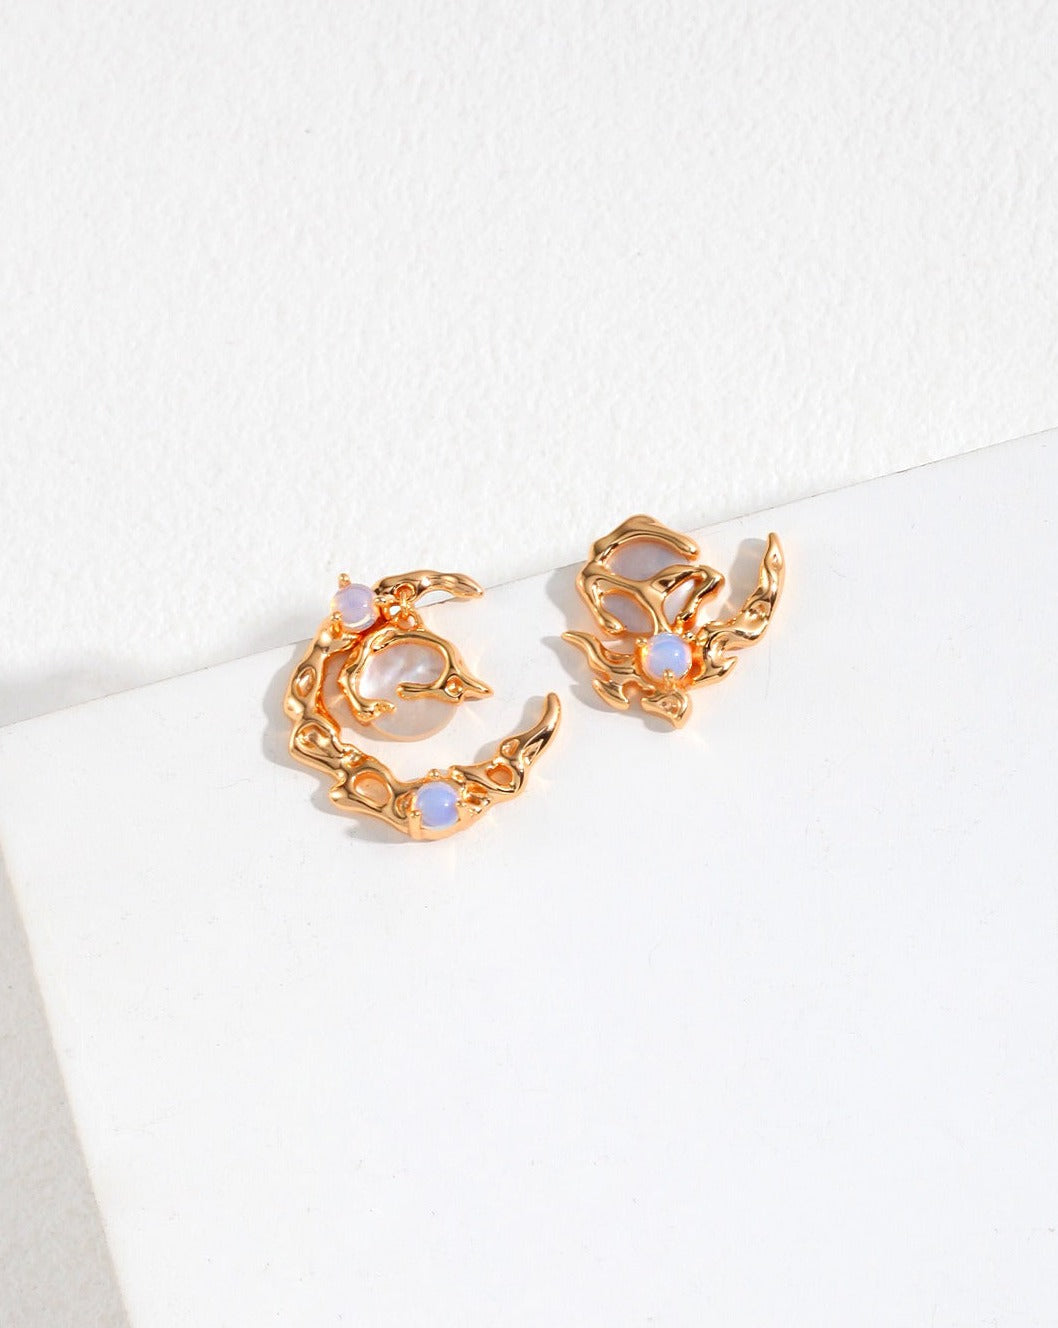 fashion-jewelry-minimalist-jewelry-design-jewelry-statement-necklace-pearl-earring-bracelet-rings-gold-coated-silver-bijoux-moon-shape-shelll-asymmetrical-earrings-opal-retro-gold